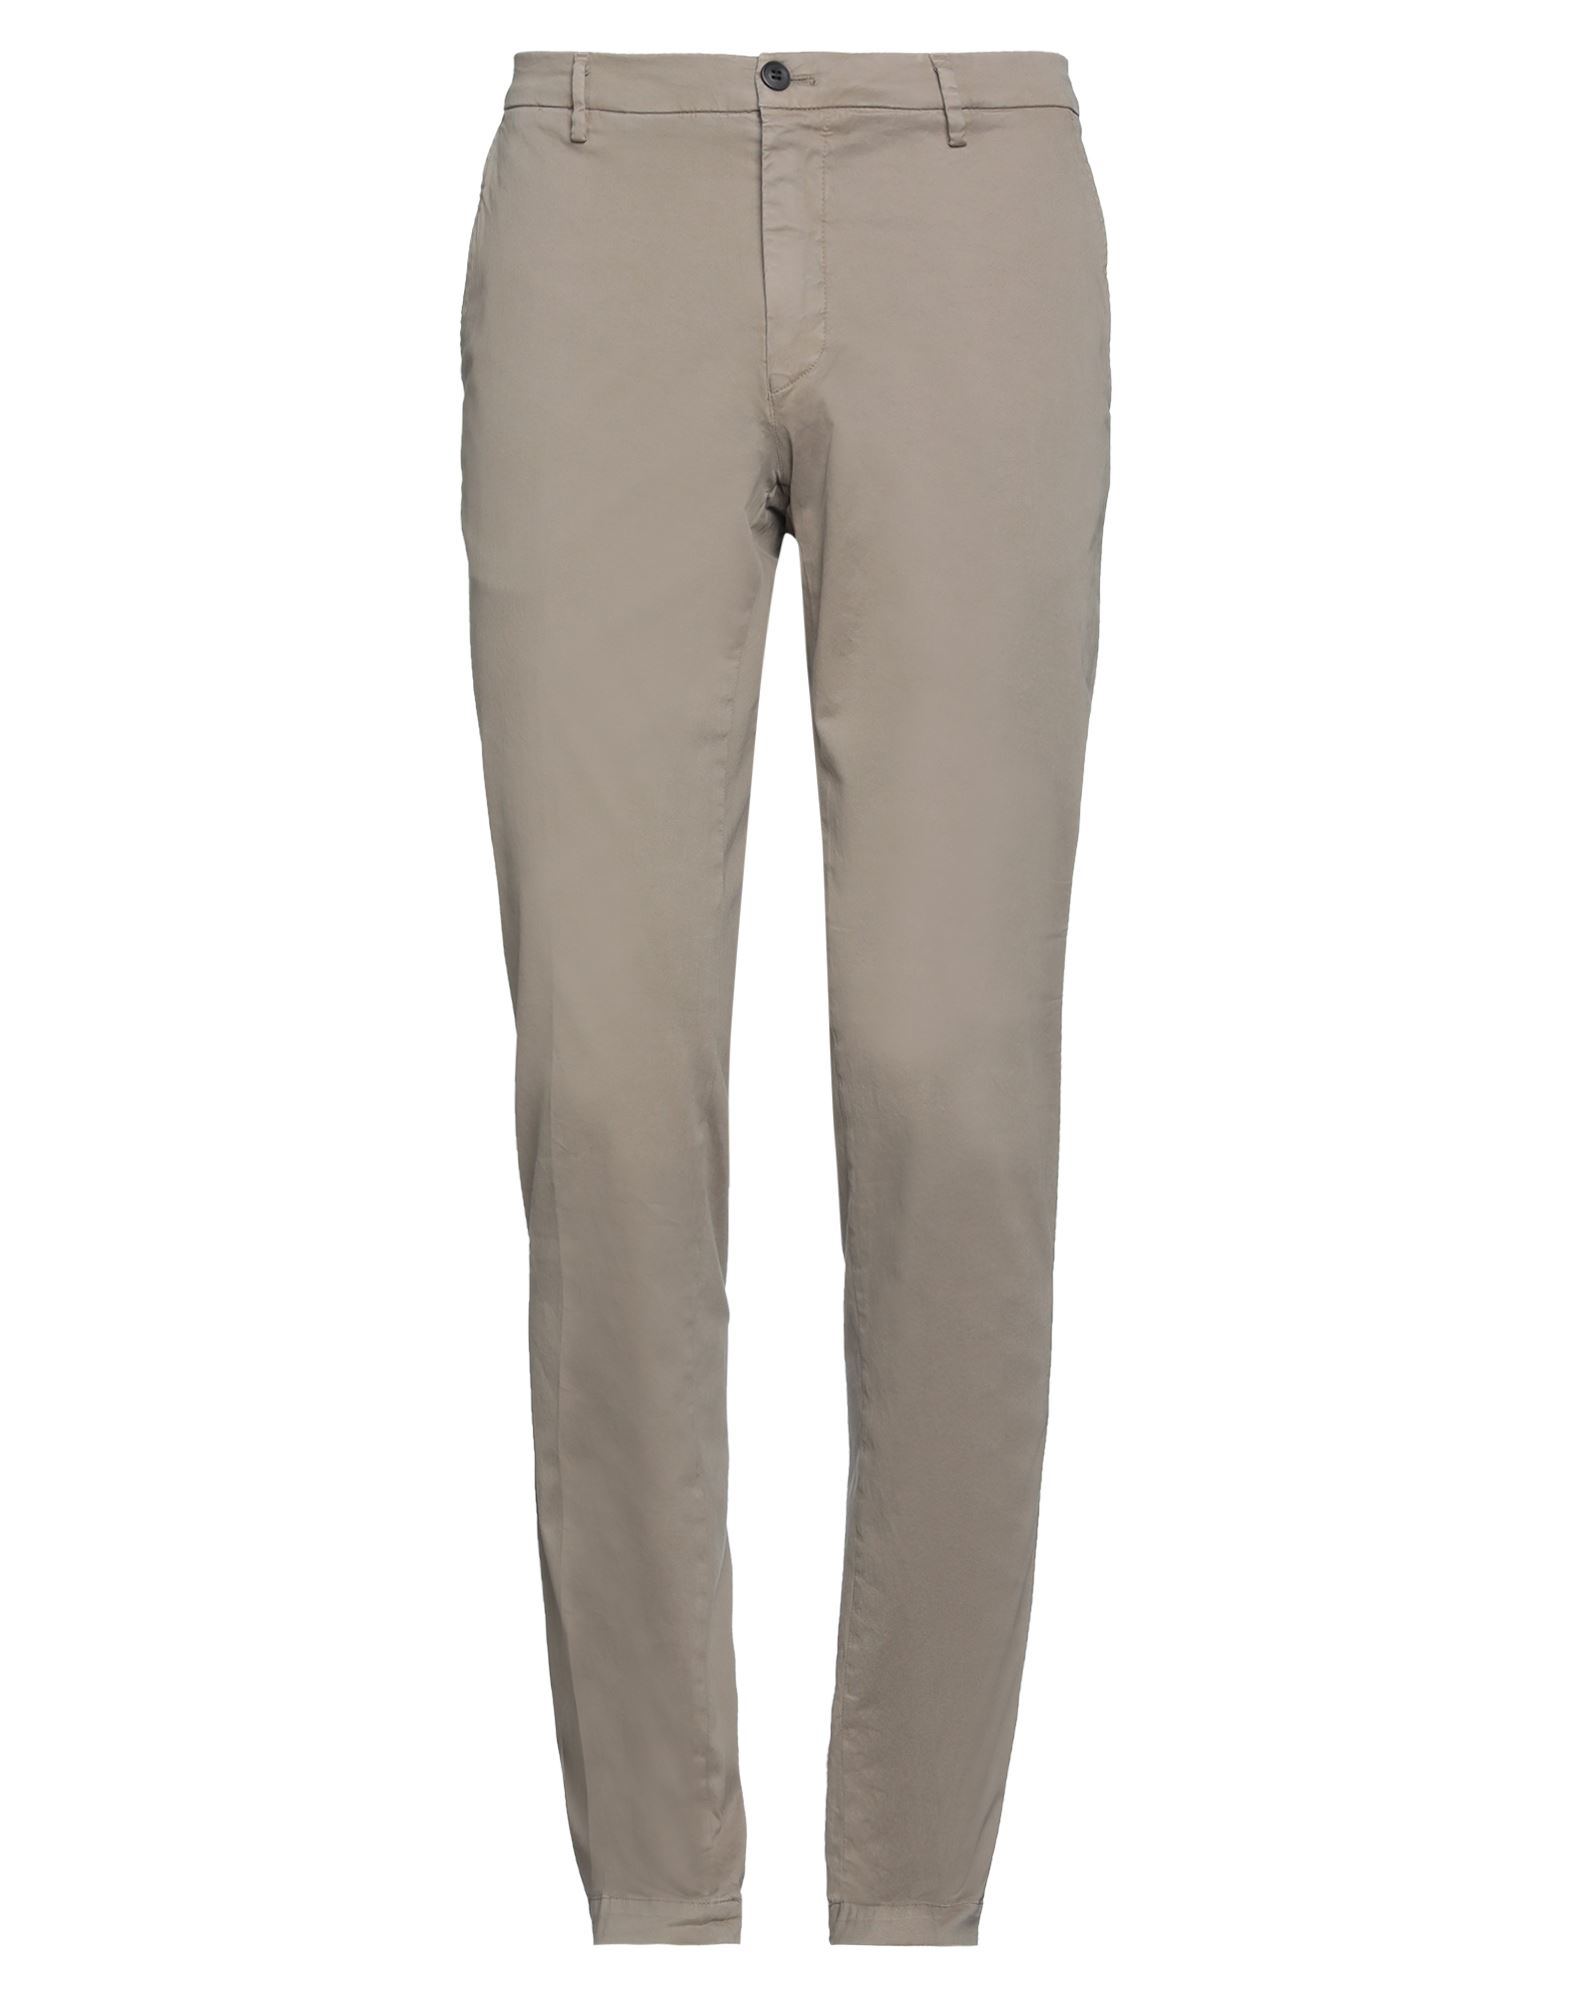 Mason's Man Pants Light Brown Size 38 Linen In Khaki